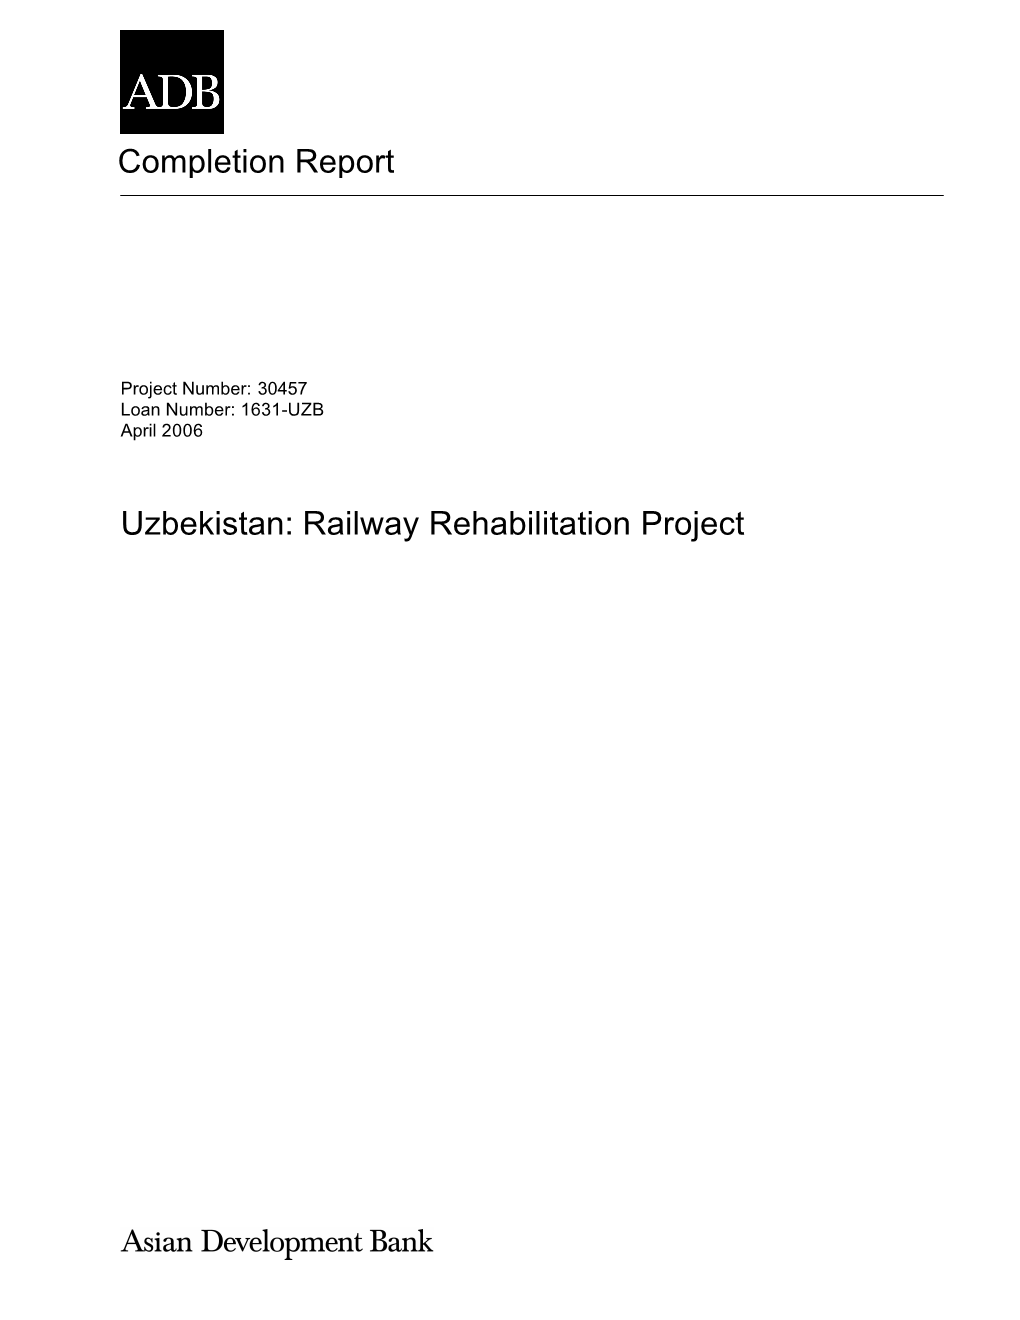 Uzbekistan: Railway Rehabilitation Project